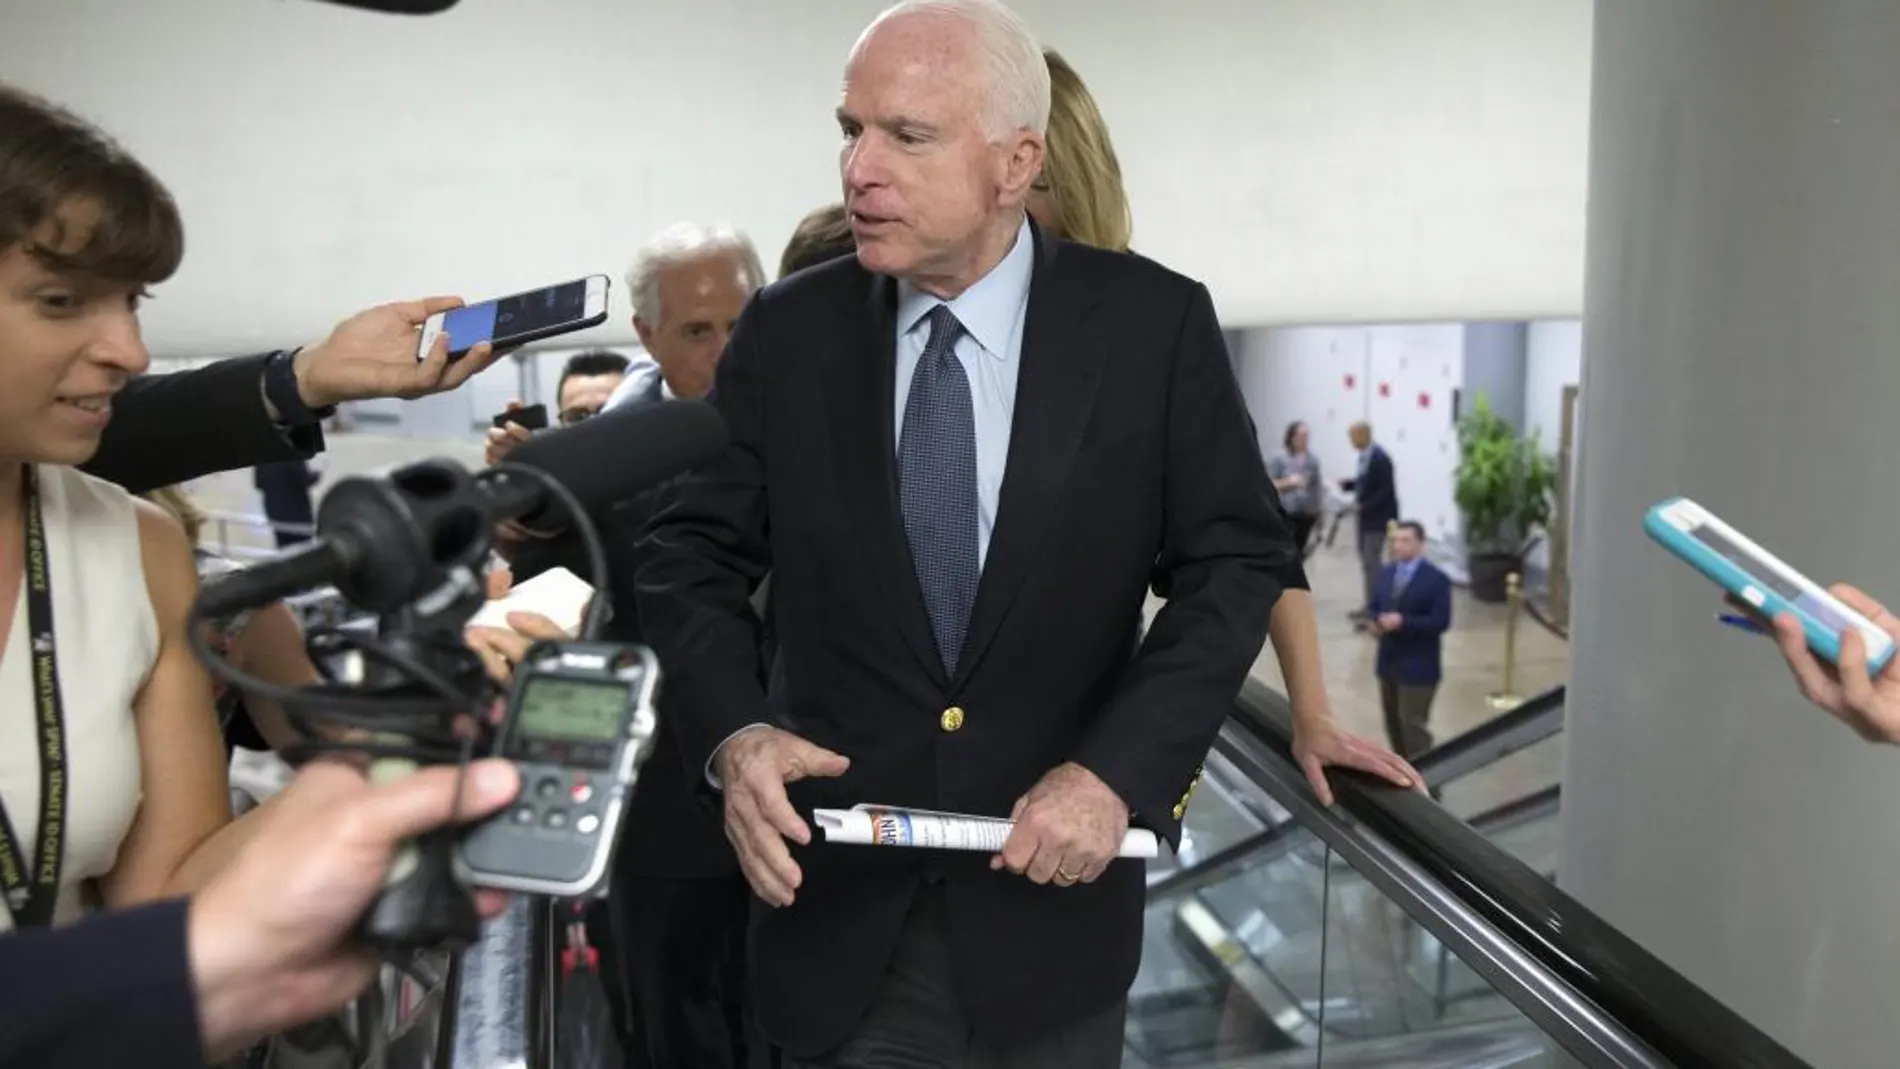 El senador republicano John McCain el pasado 13 de julio de 2017